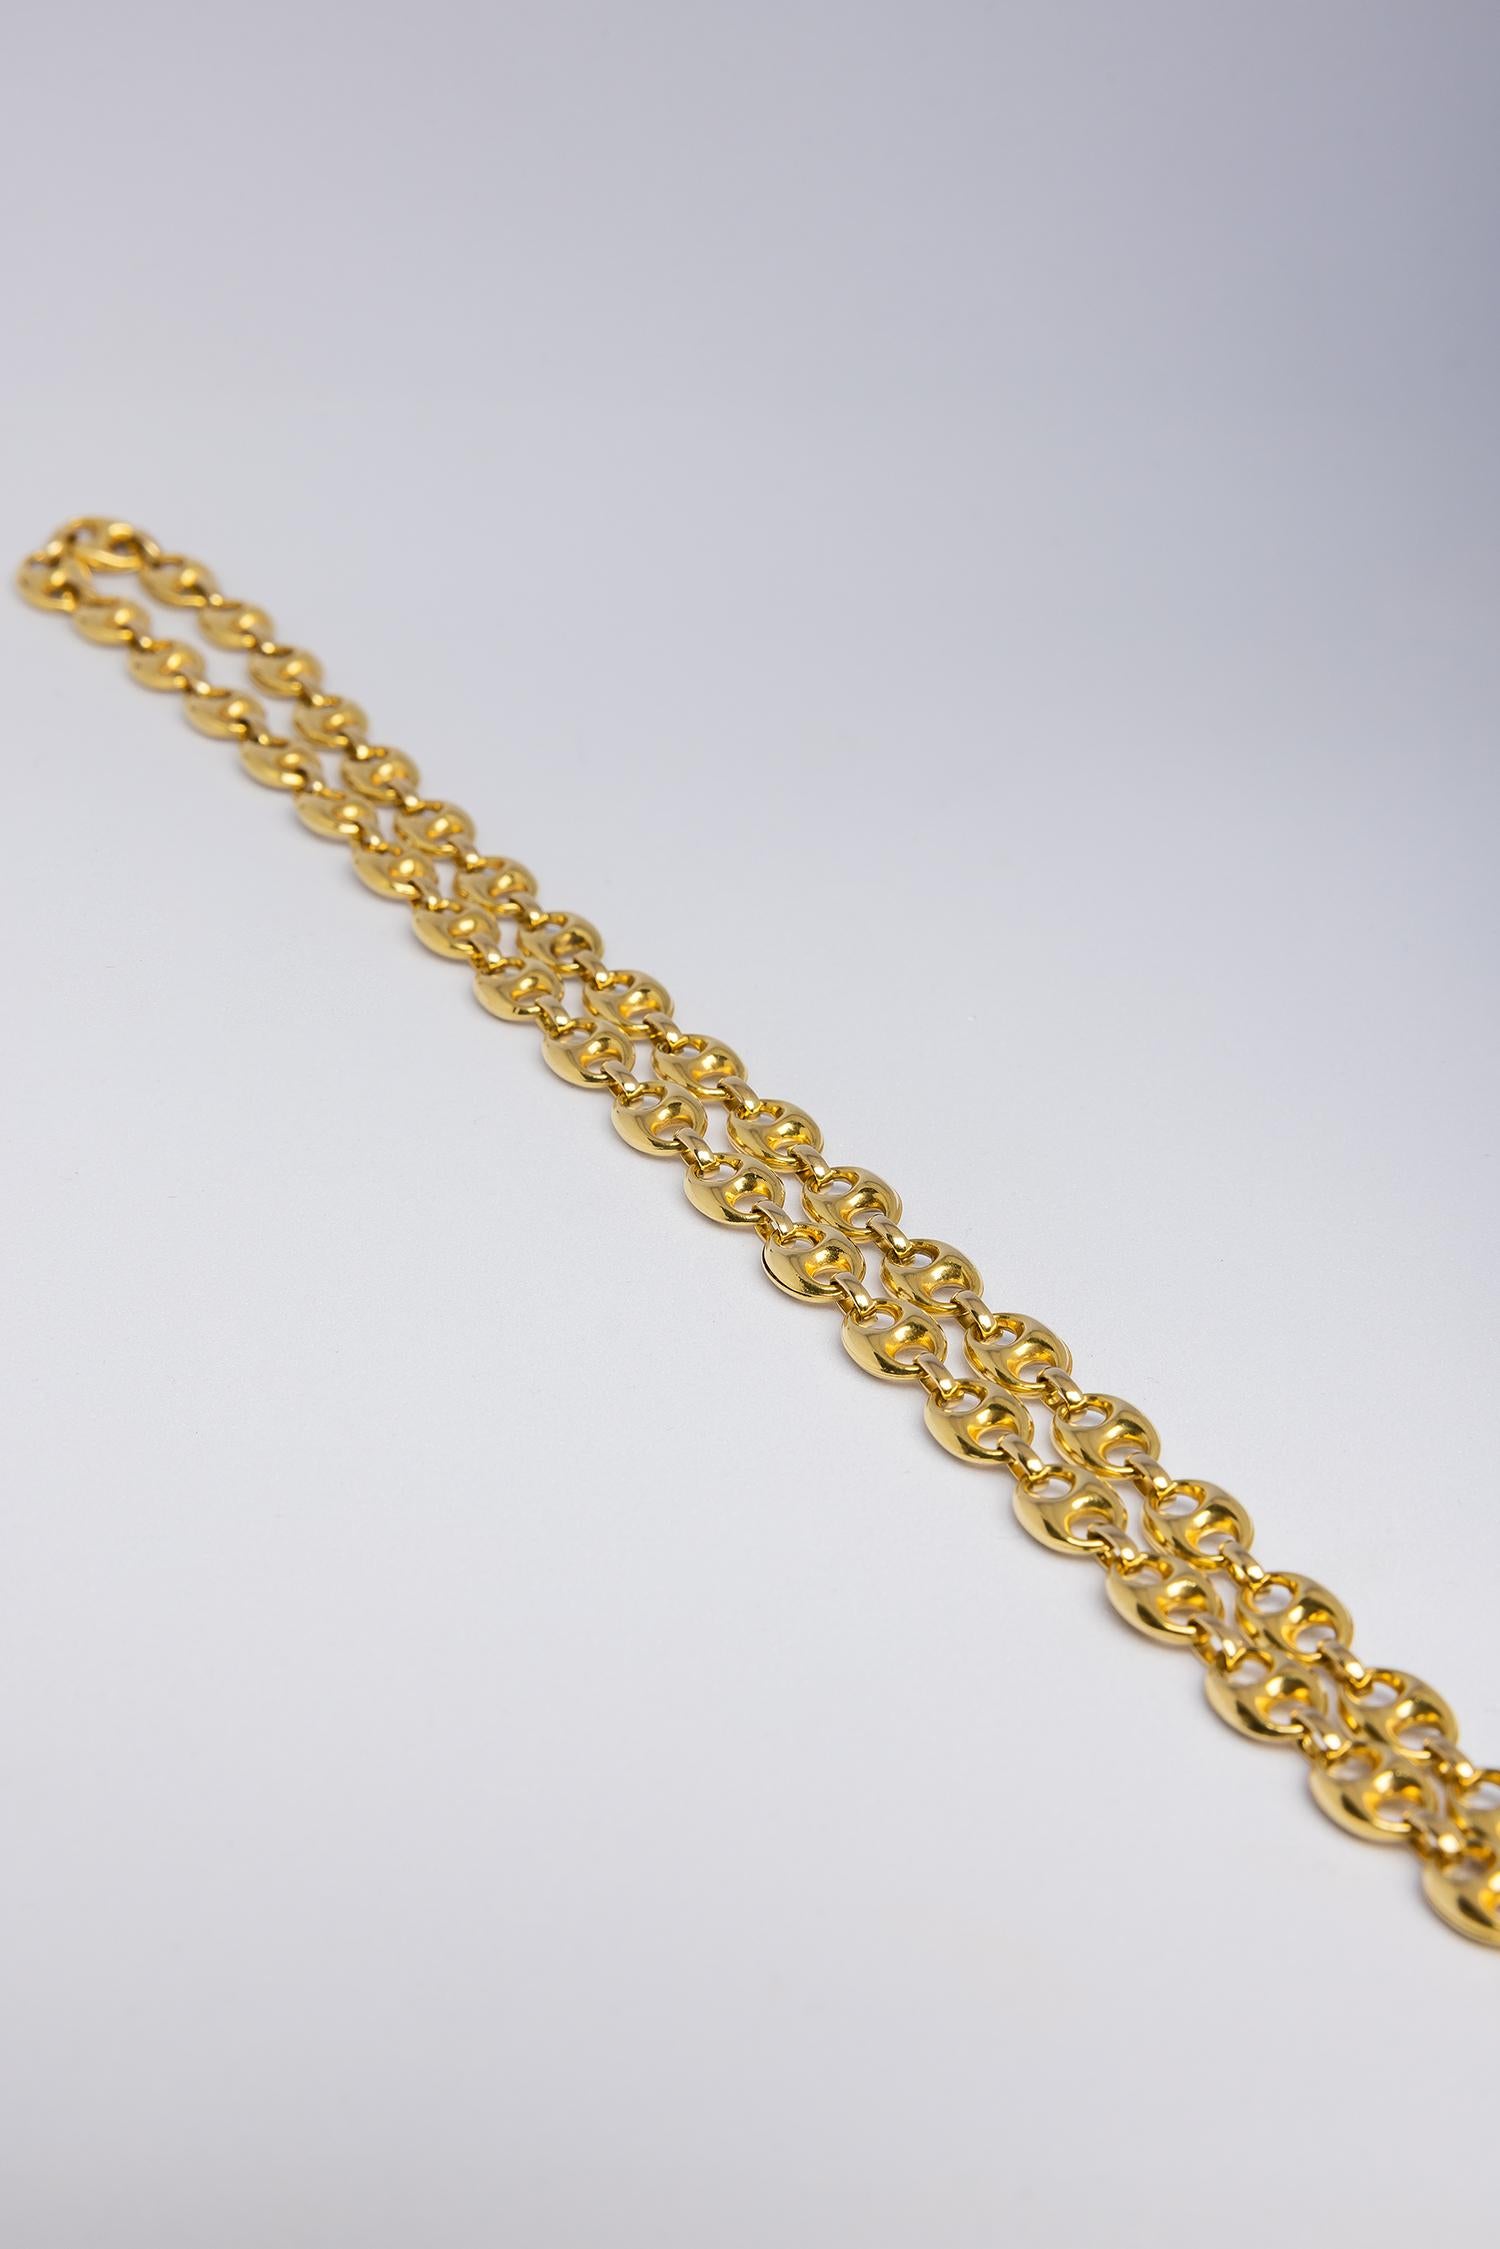 Women's or Men's Vintage 18 karat anchor or mariner link necklace